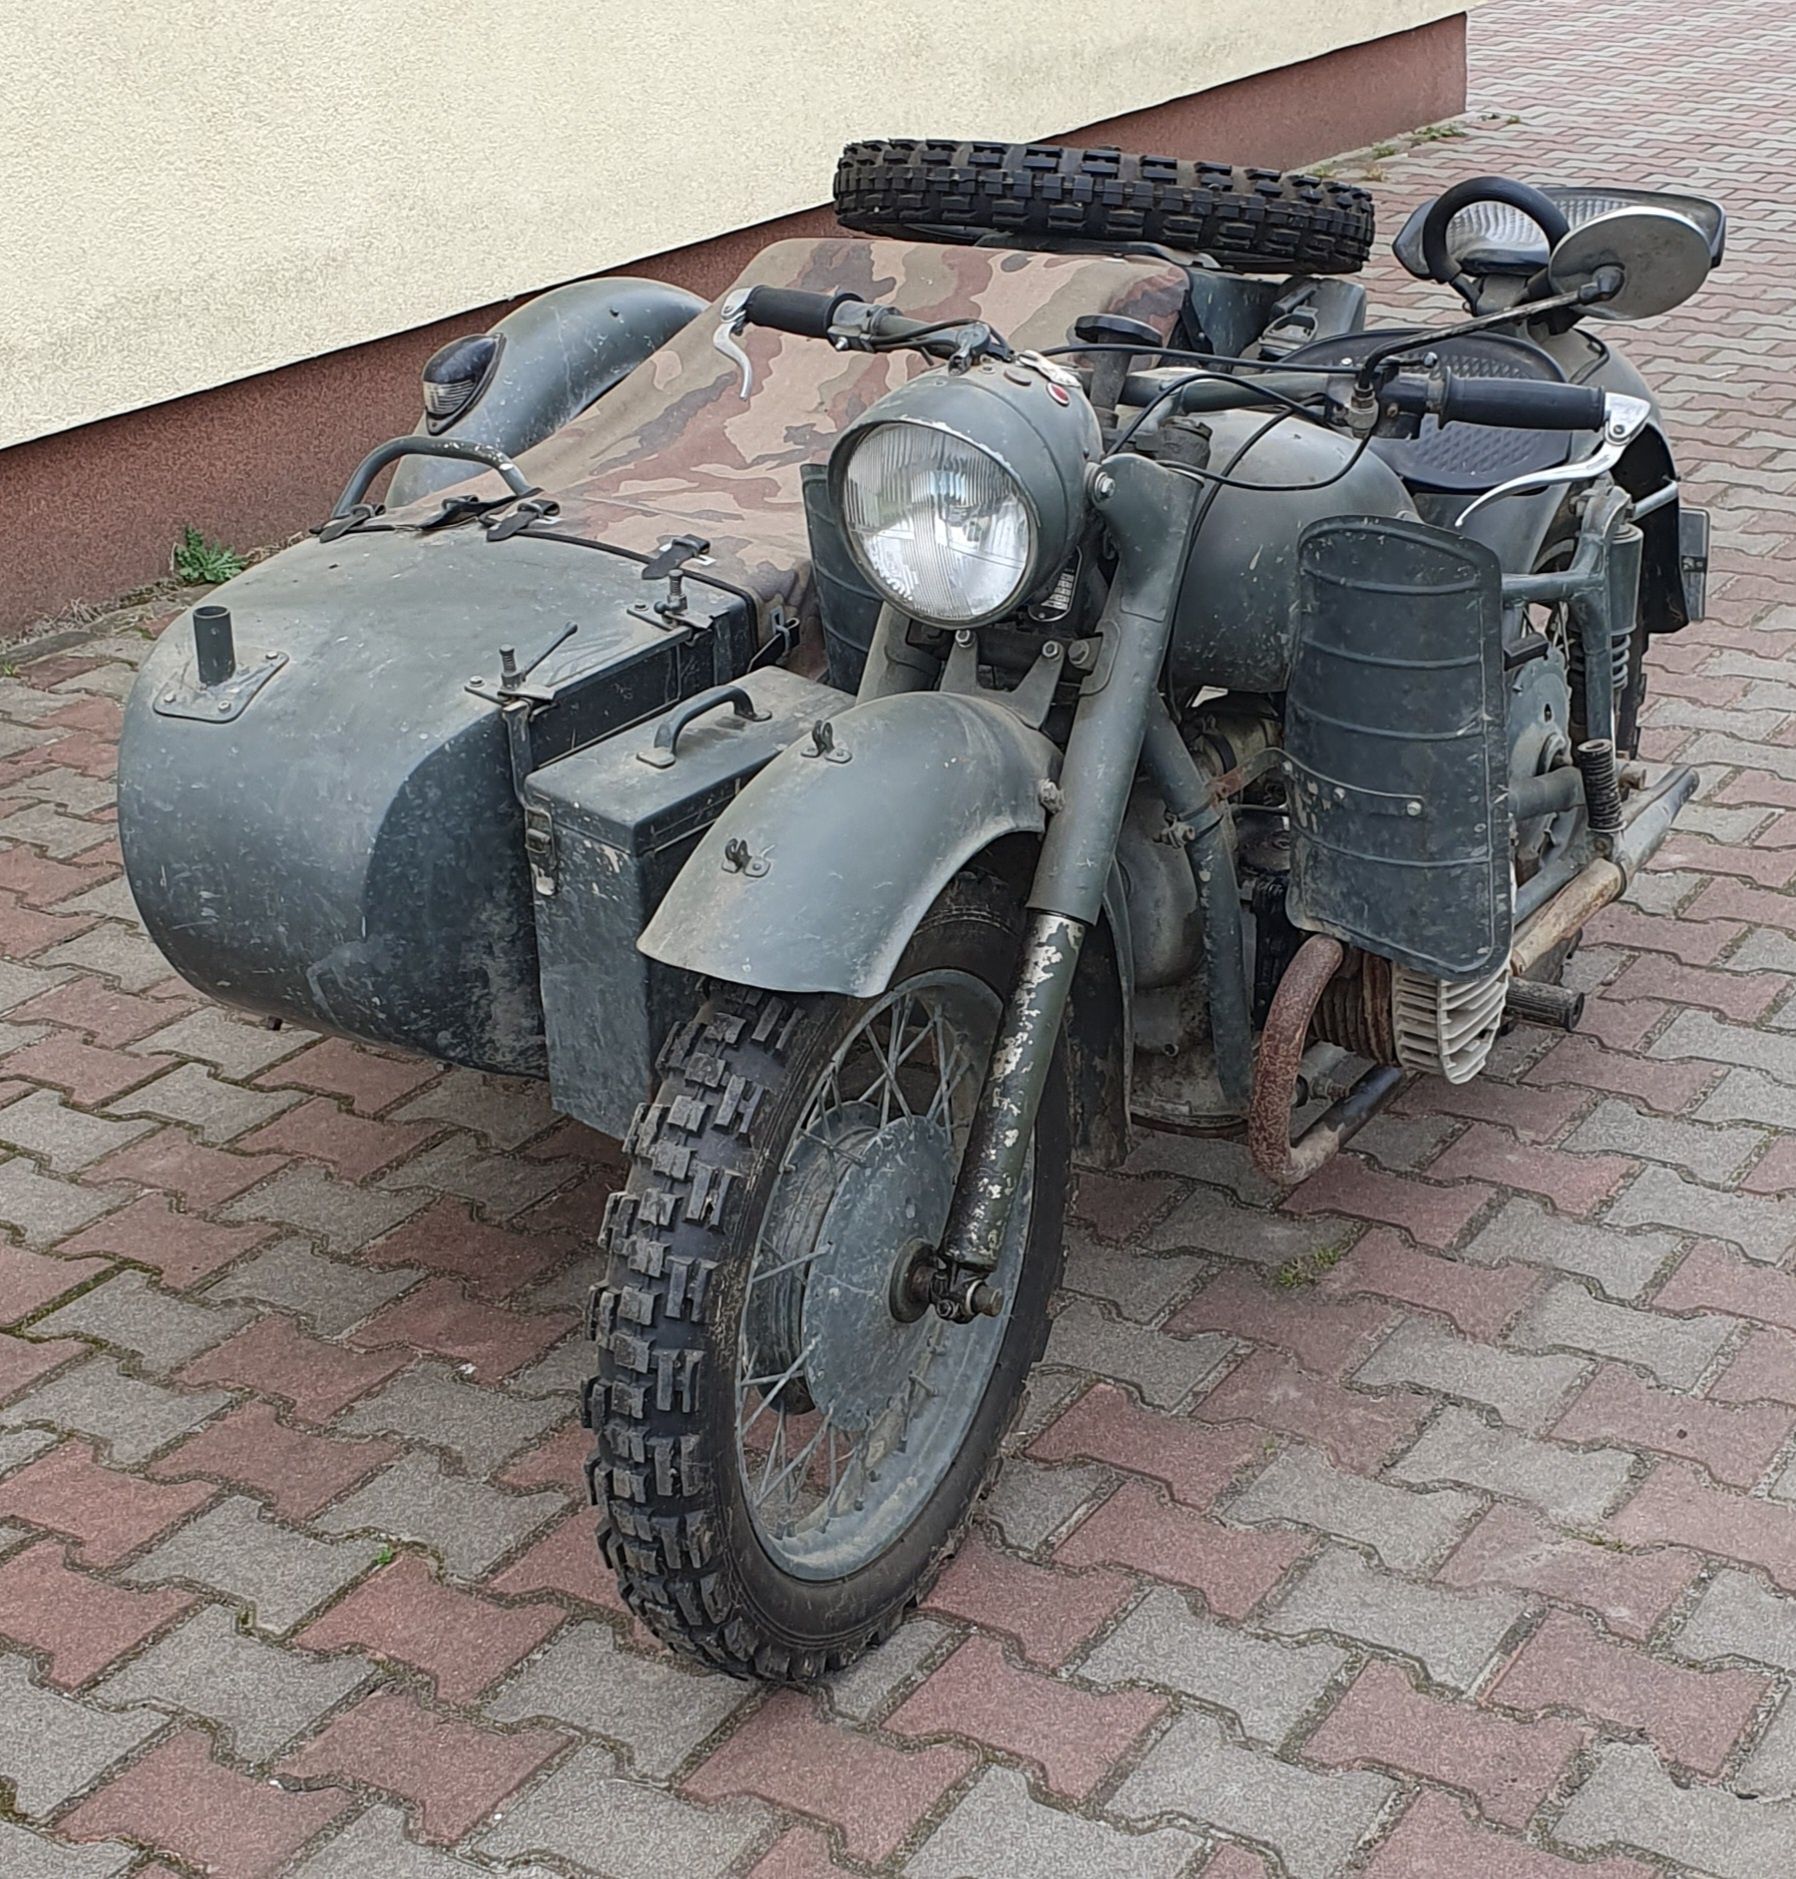 Motocykl K-750, Kaśka, zabytek